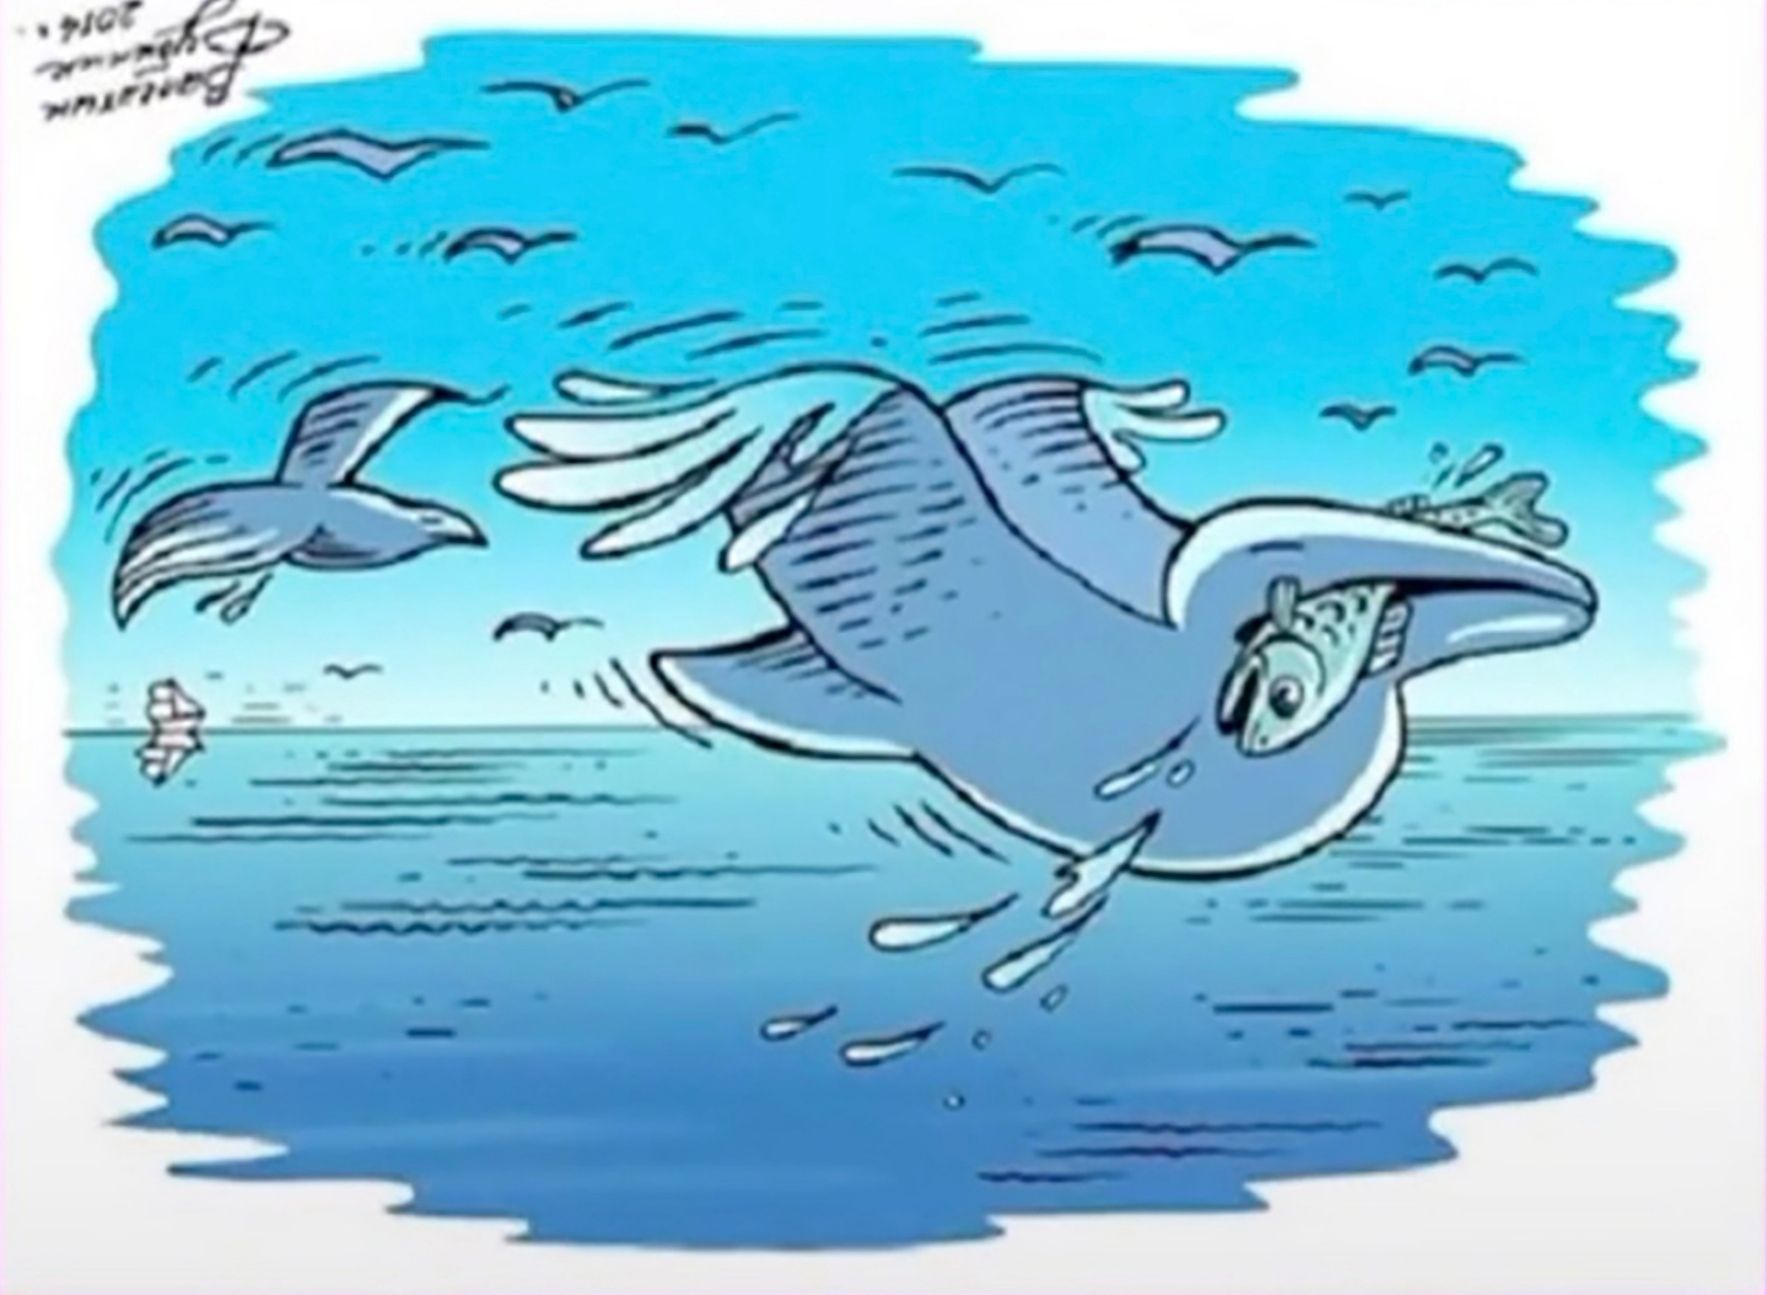 Jawaban tes IQ menemukan burung antara lumba-lumba dan ikan pada gambar. 